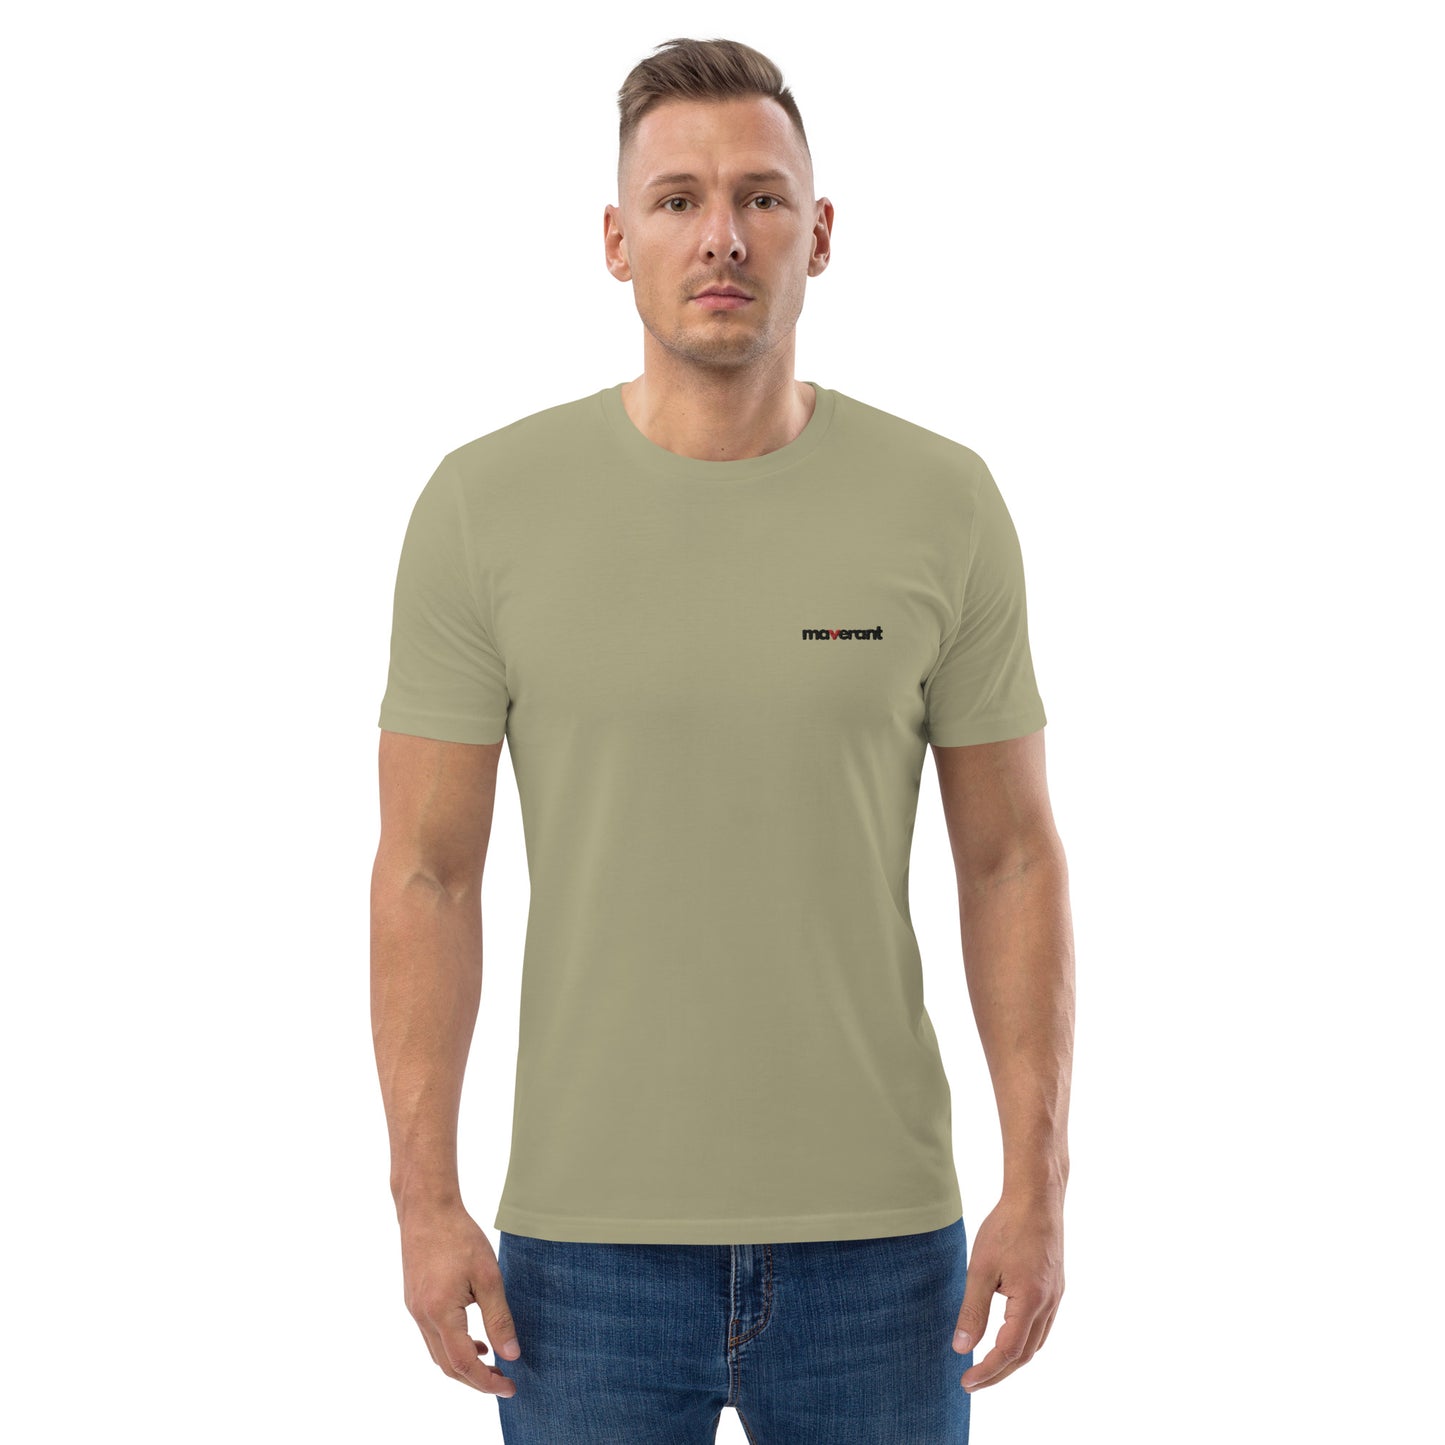 T-shirt in cotone organico unisex colore Sage con logo ricamato